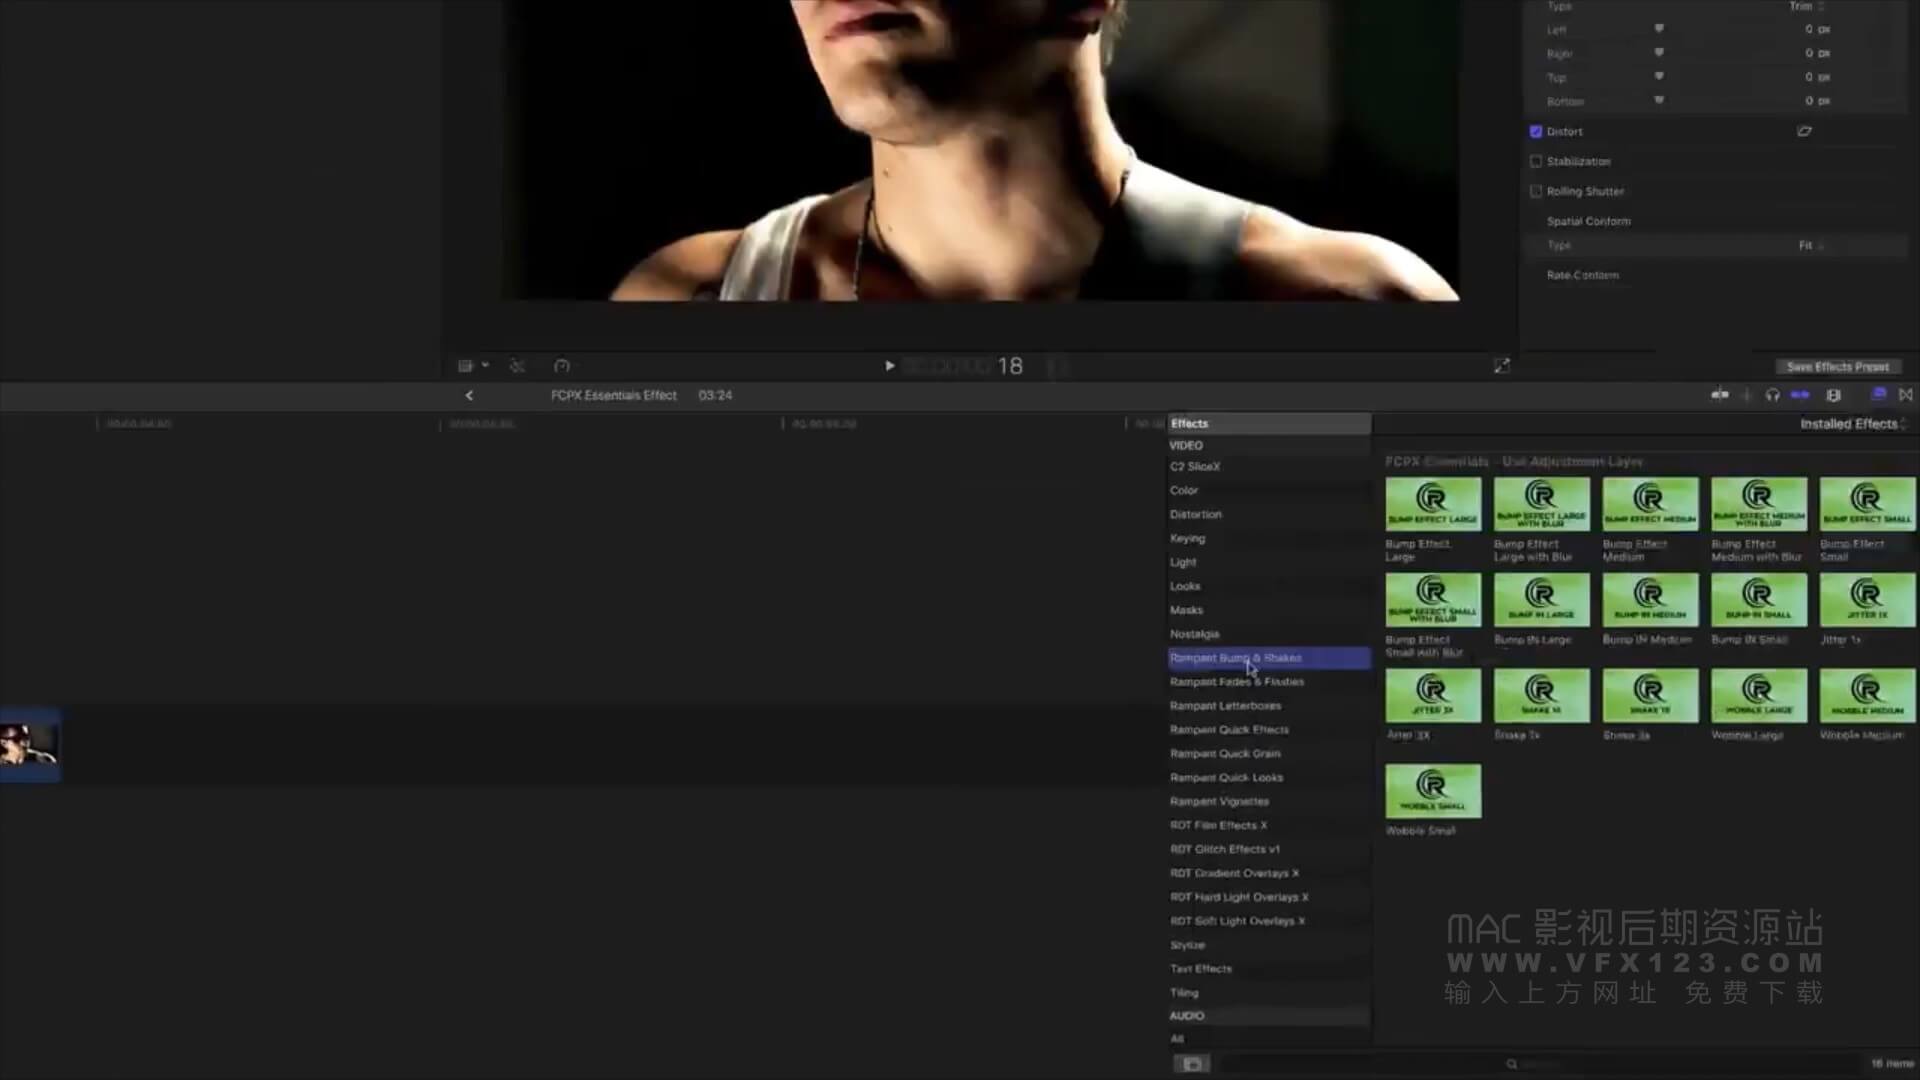 Fcpx插件 vlog视频制作常用转场特效宽银幕调色扭曲复古暗角调节层色彩分离抖音效果等